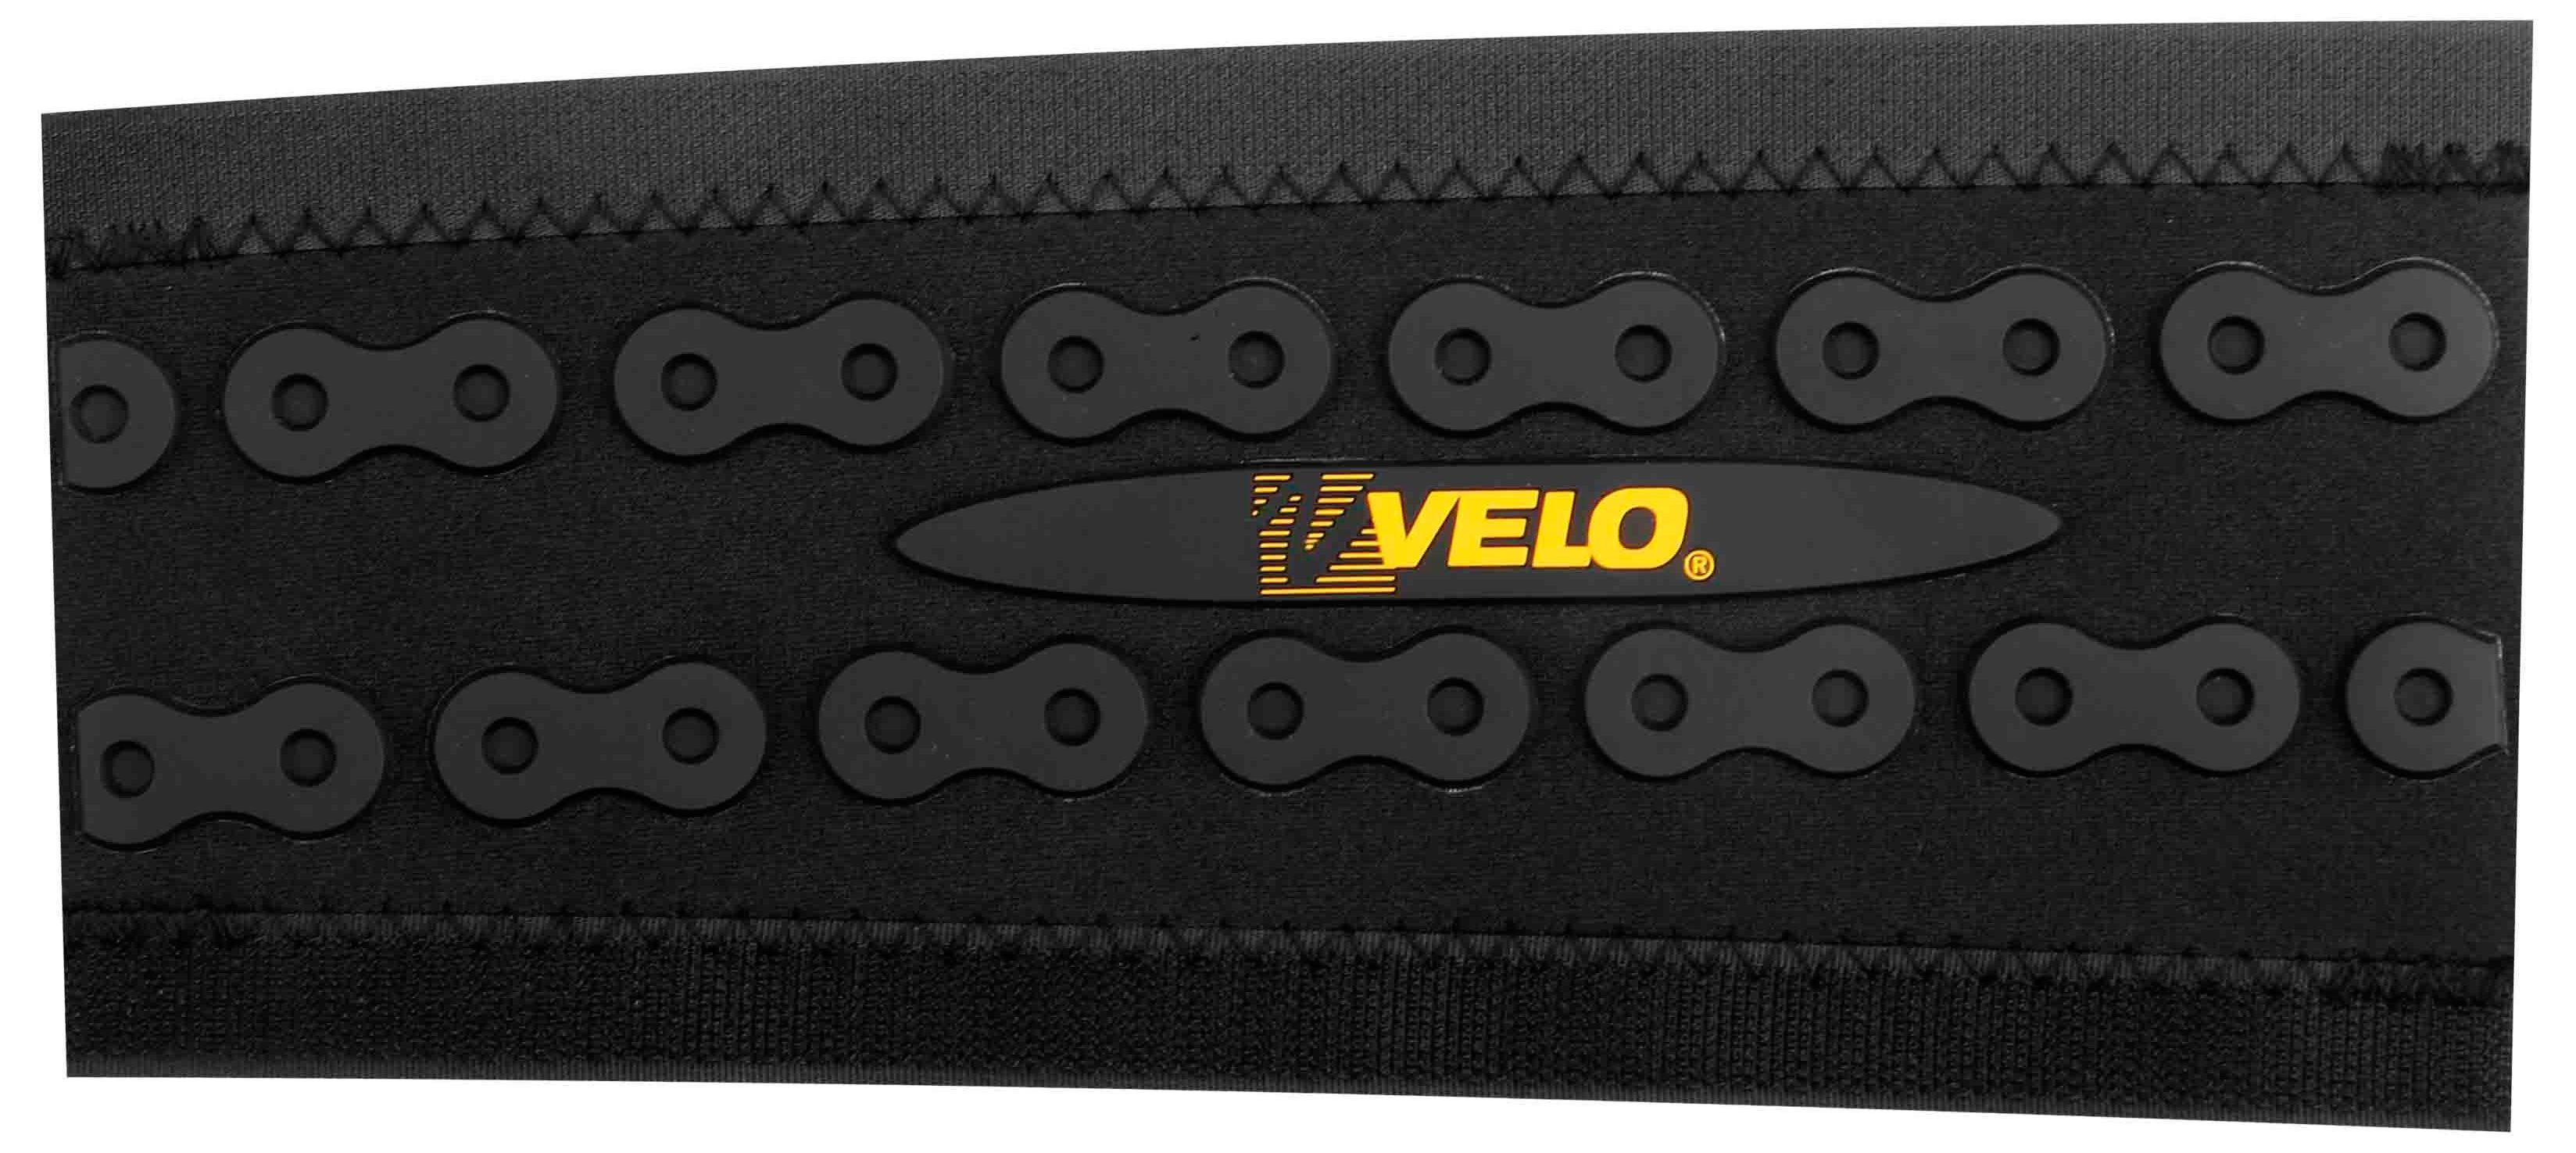  Защита велосипеда Velo VLF-007